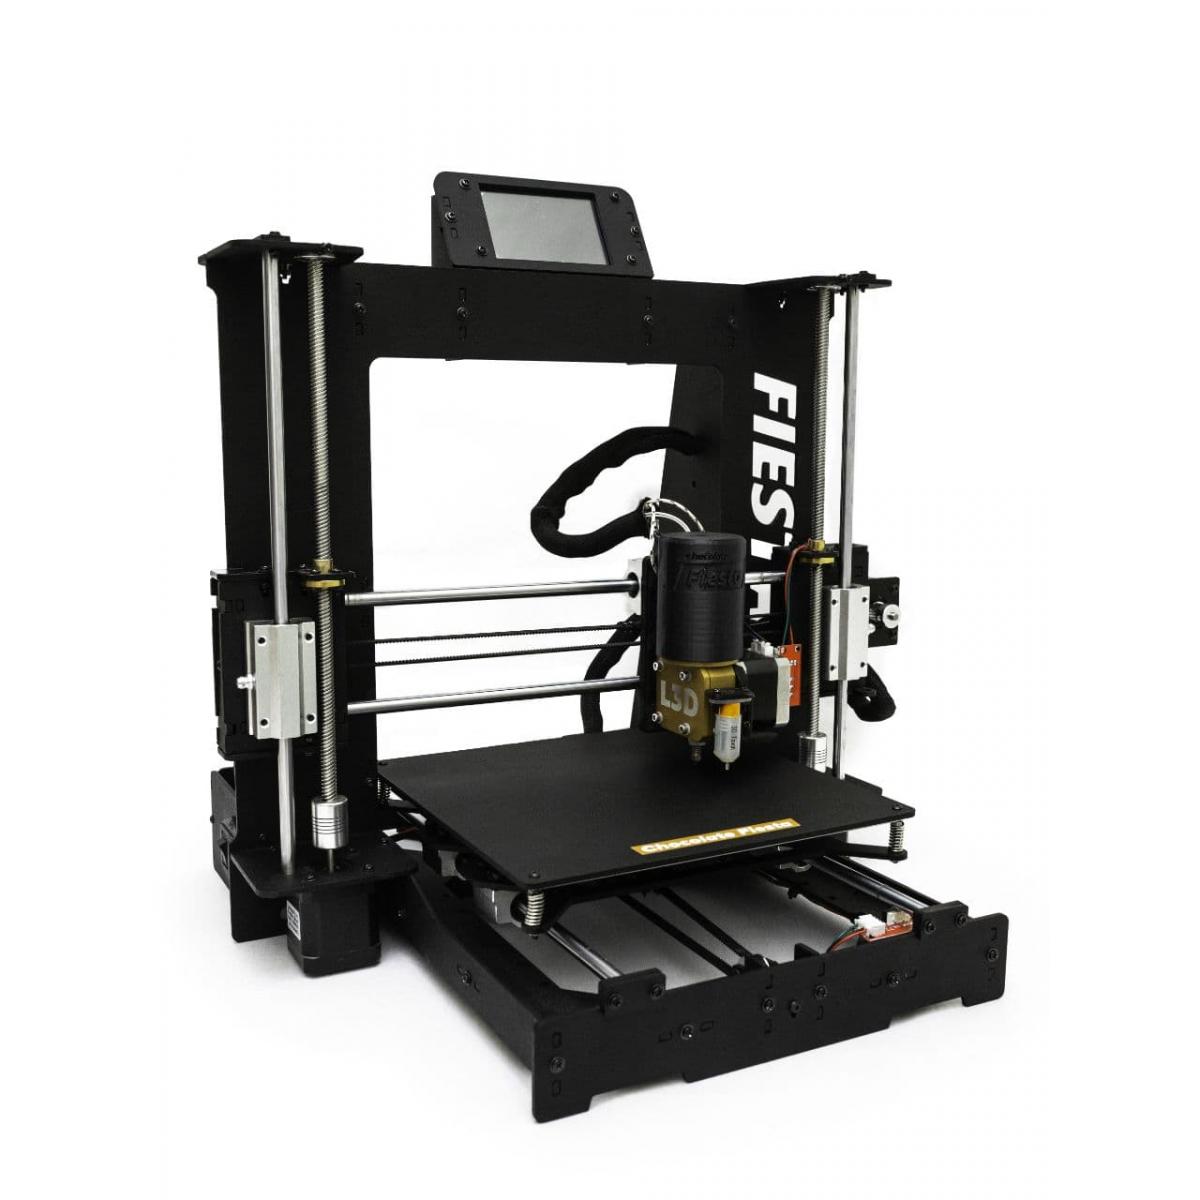 3D принтеры – безграничные возможности по доступной цене